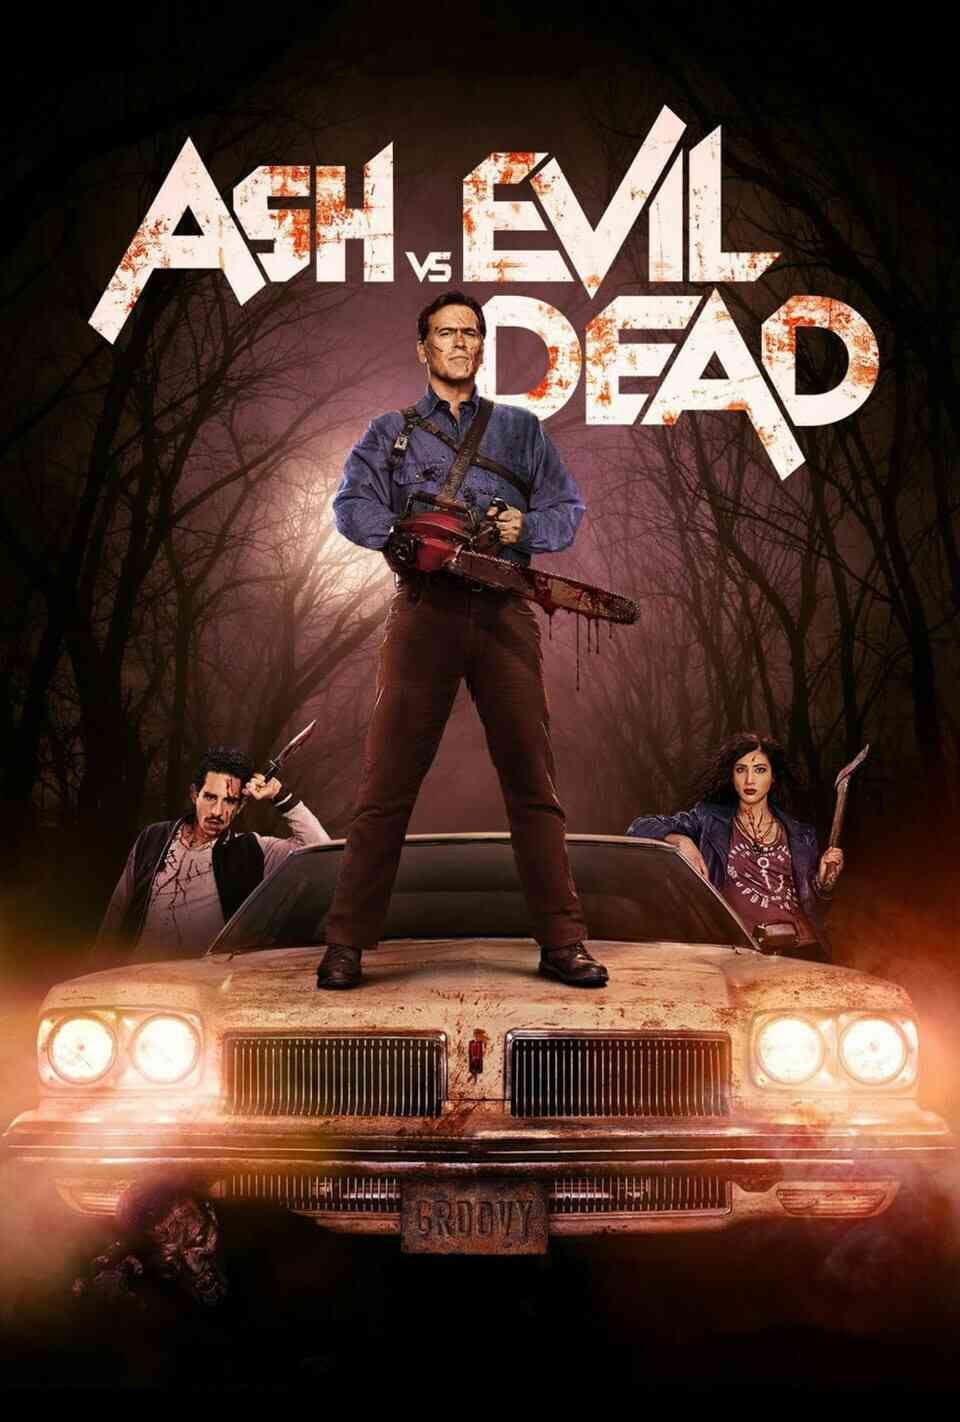 Read Ash vs Evil Dead screenplay (poster)